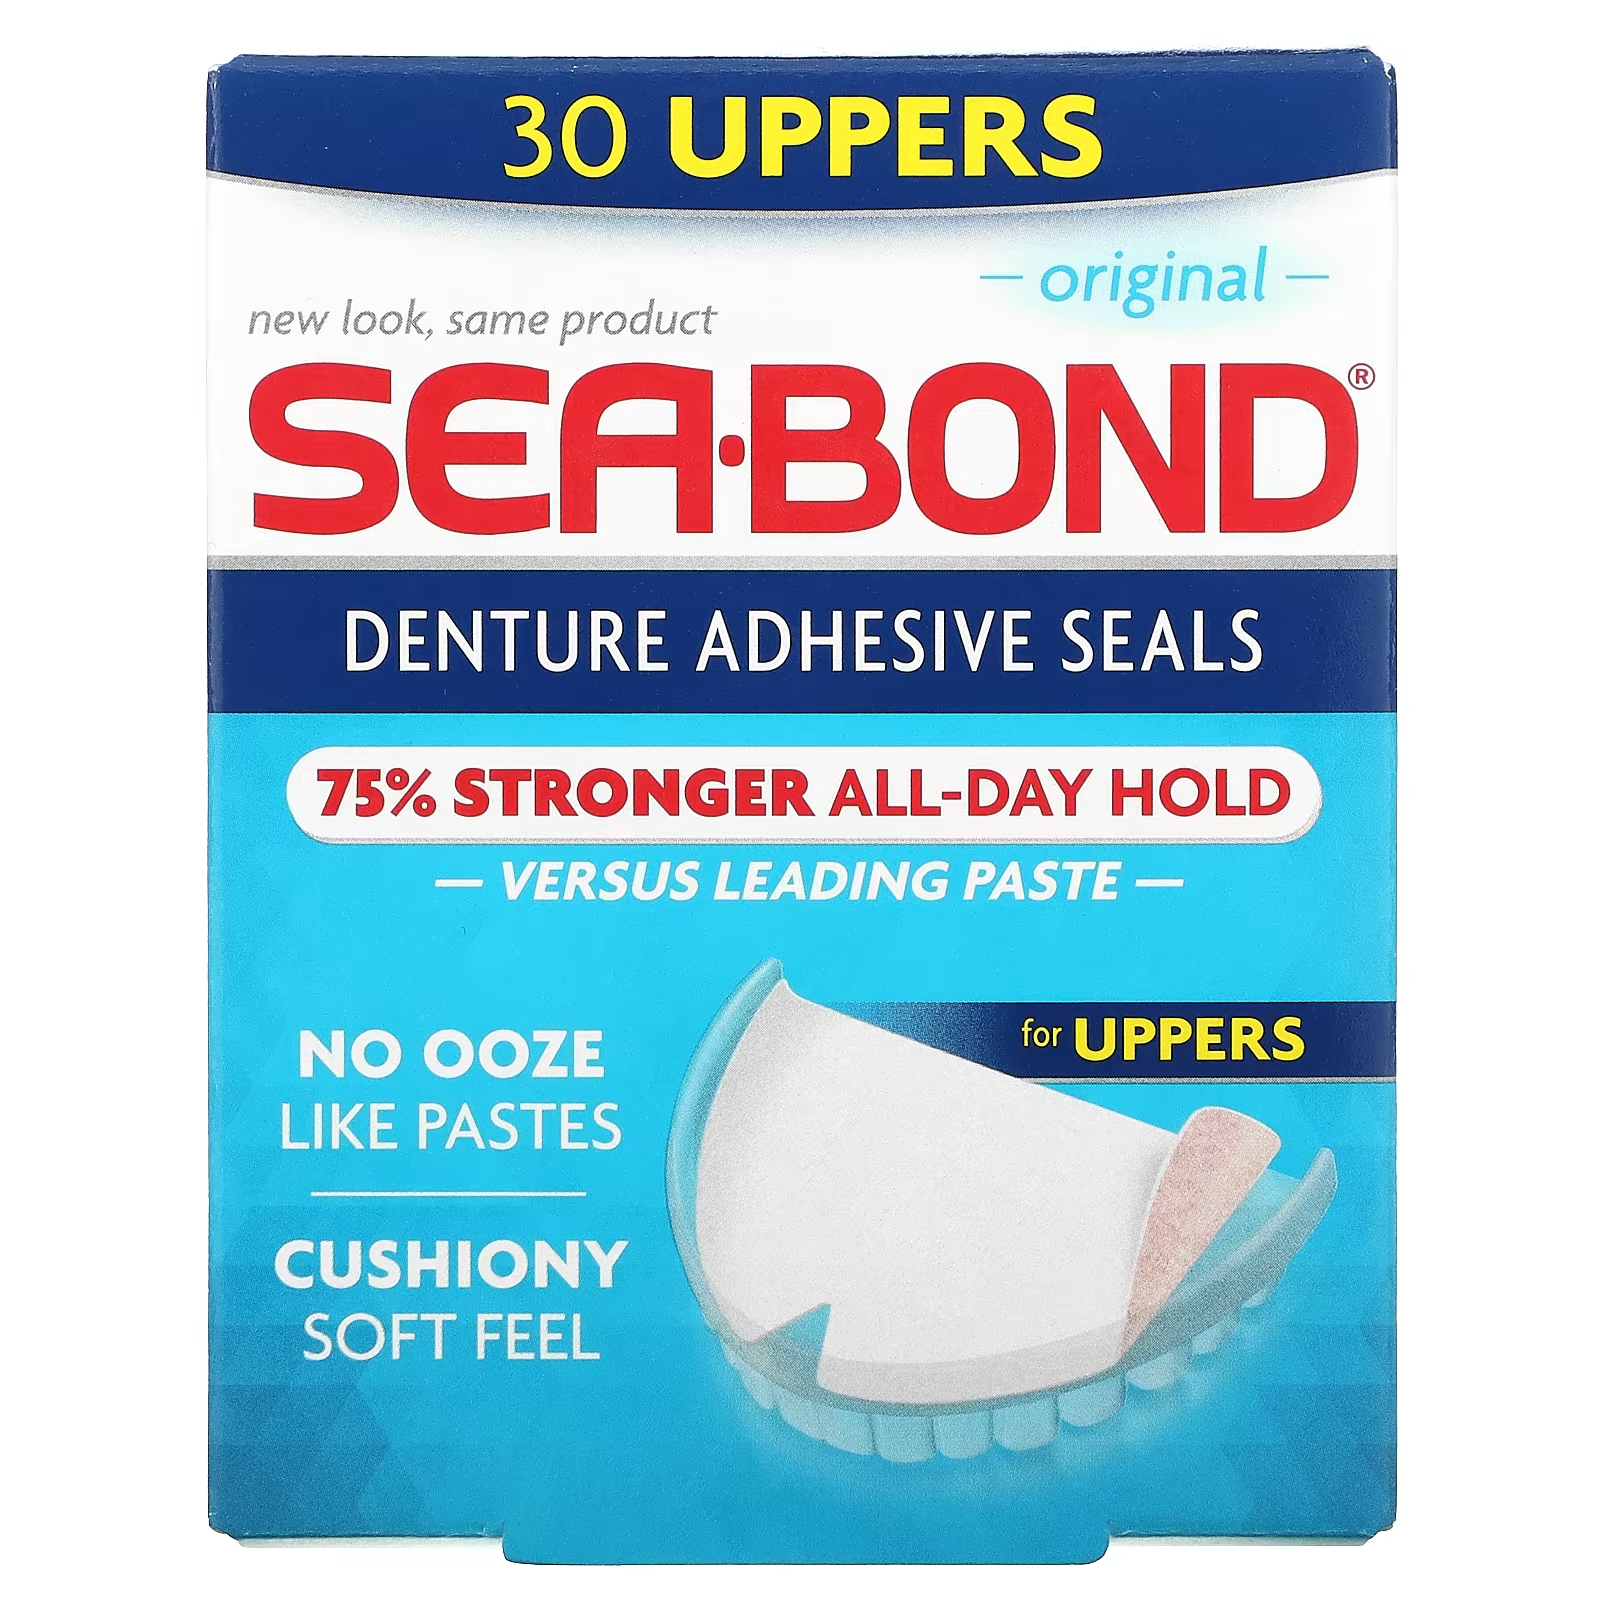 Клейкие пломбы Original 30 Uppers SeaBond для зубных протезов фото